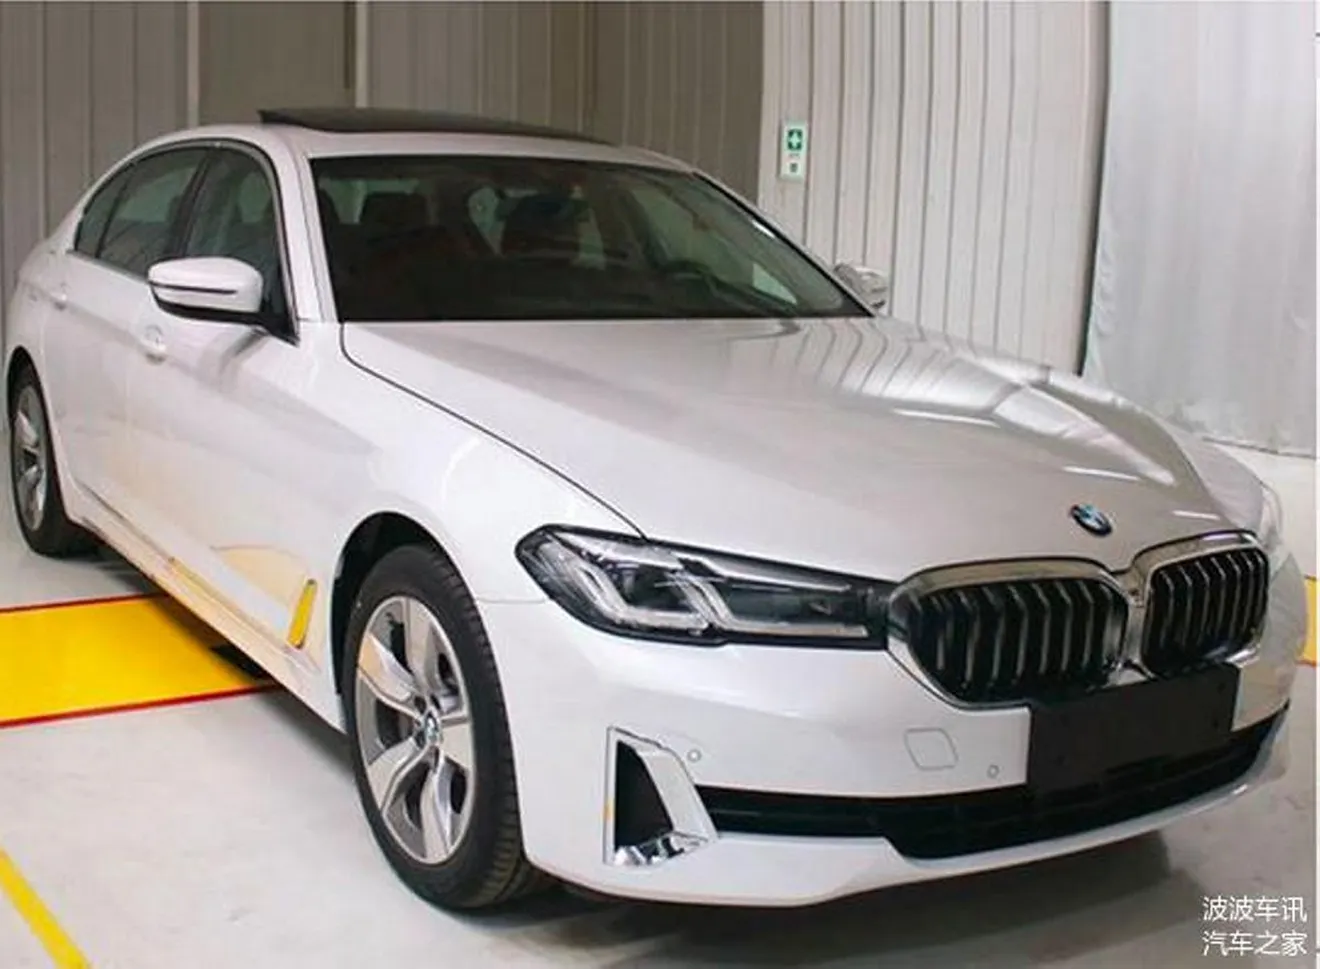 Filtrada al completo la nueva gama 2021 del BMW Serie 5 en China